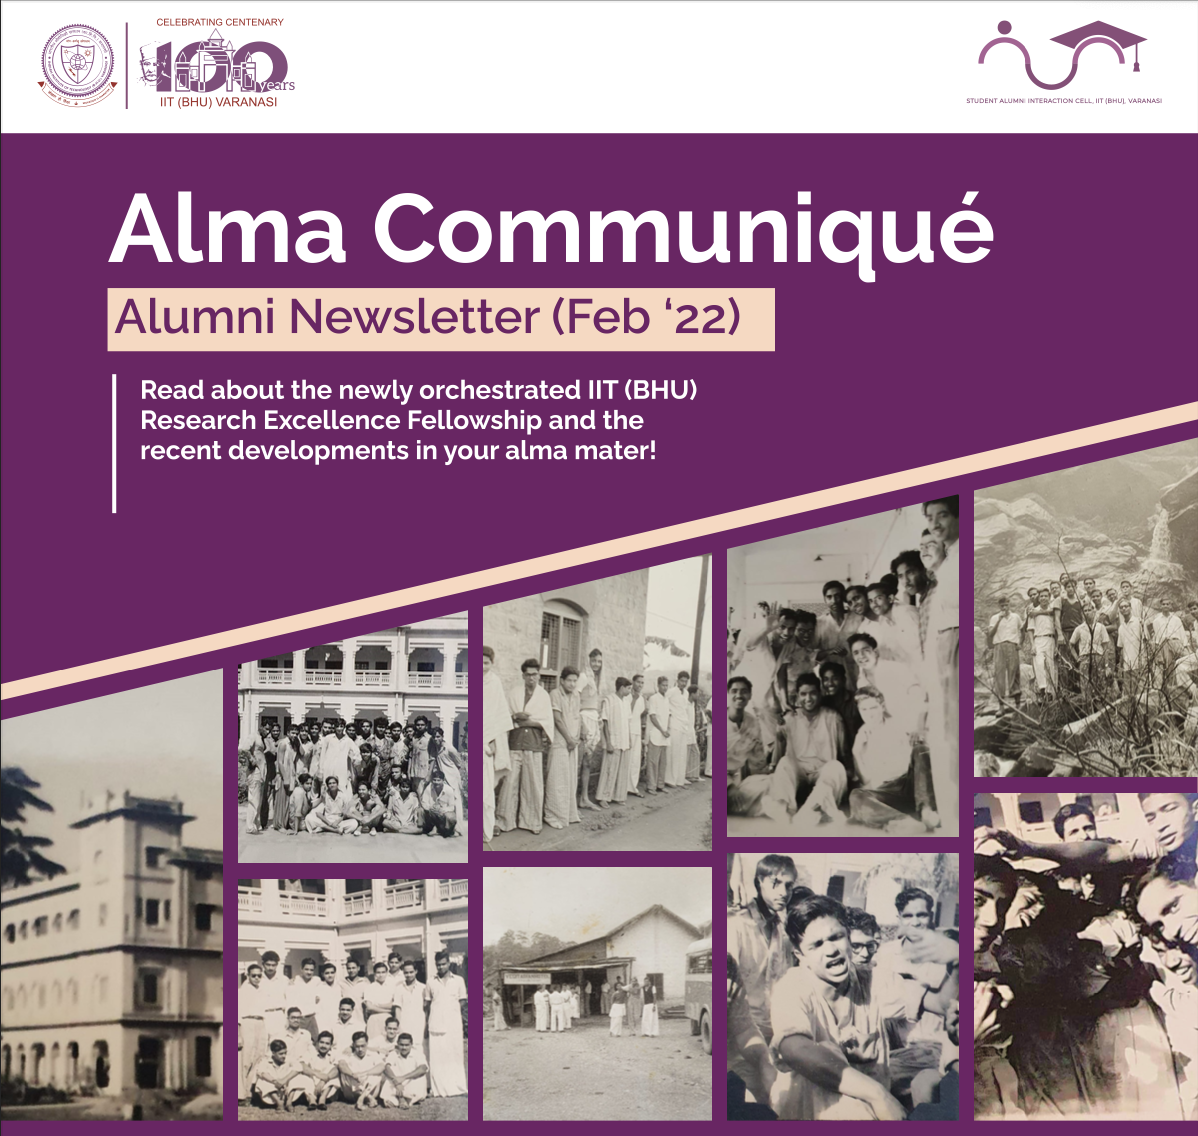 Alma Communiqué Feb. '22